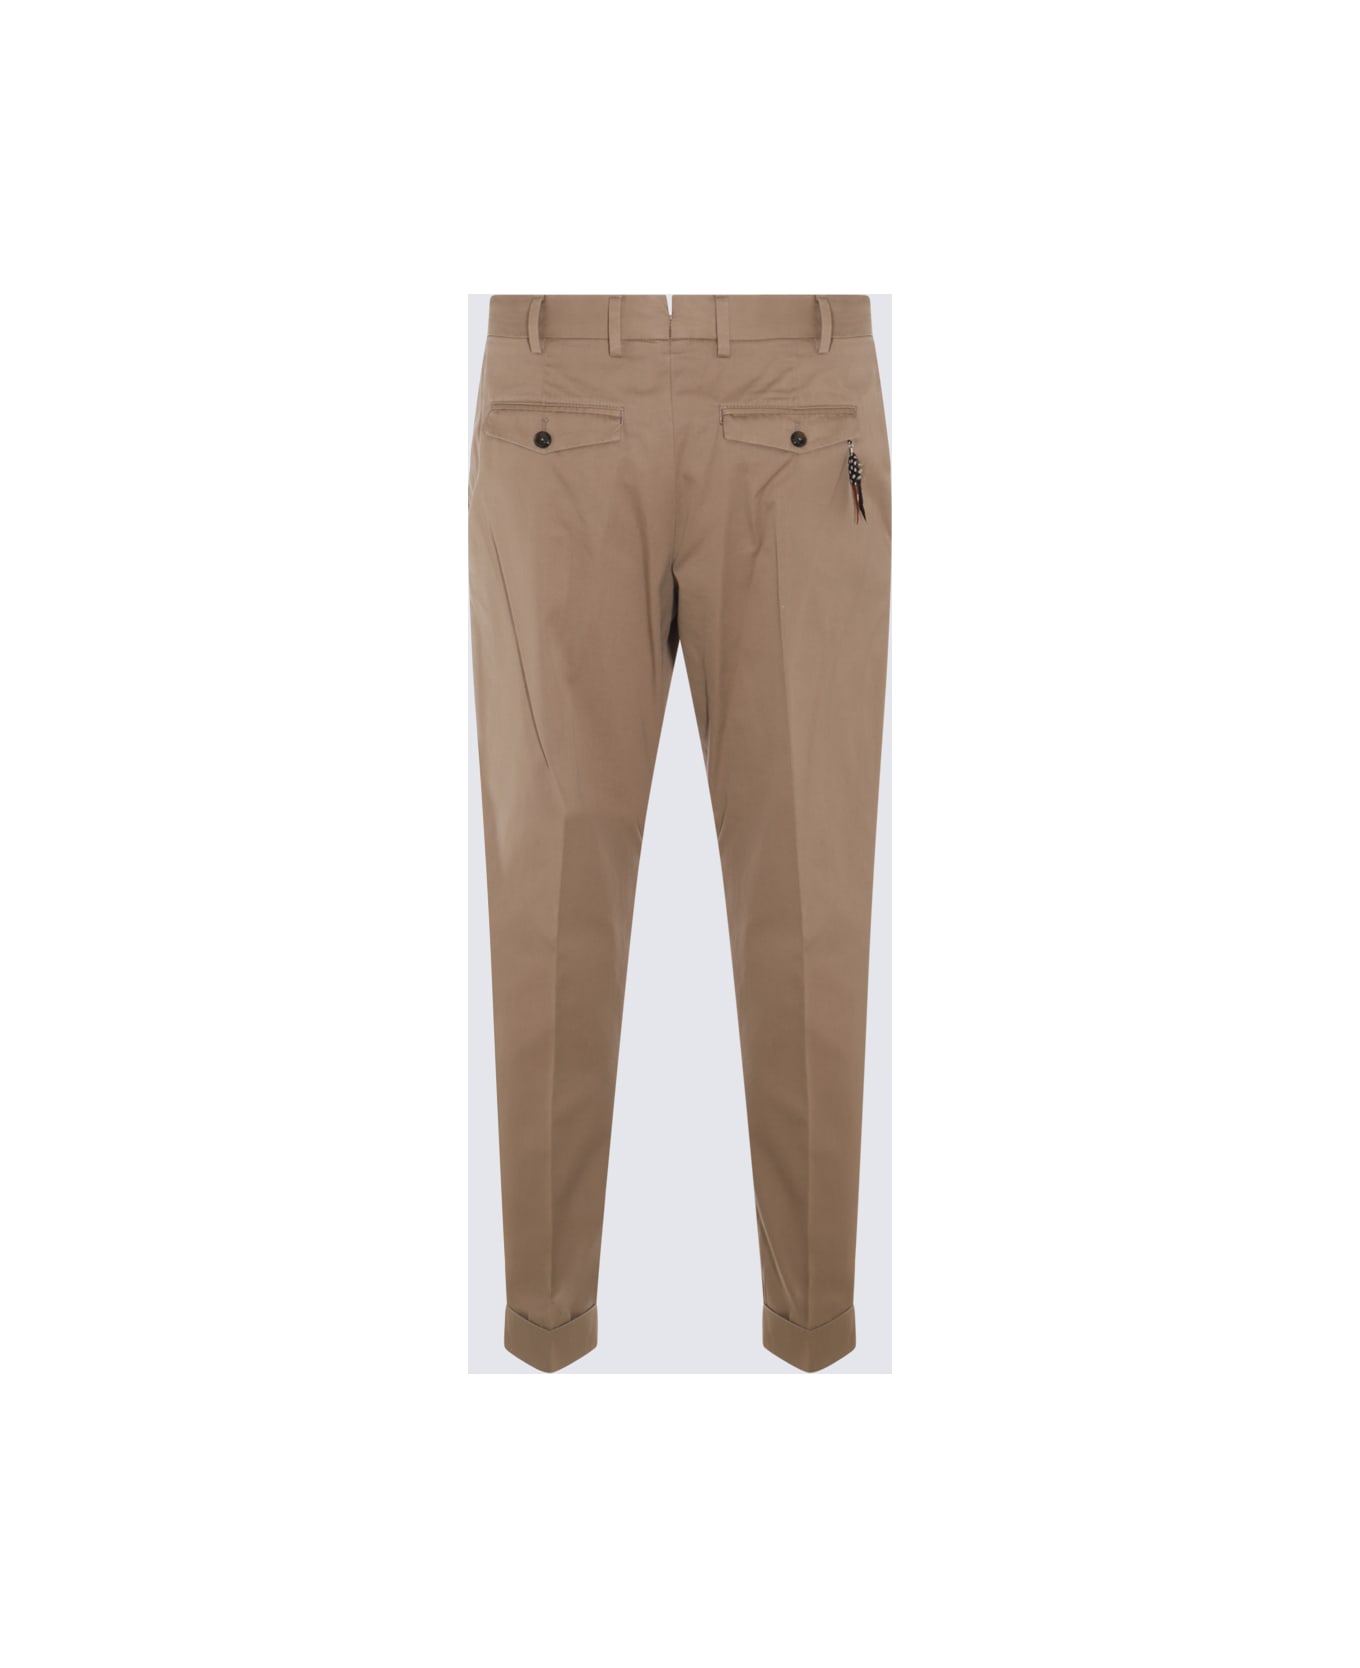 PT01 Beige Cotton Pants - Coloniale